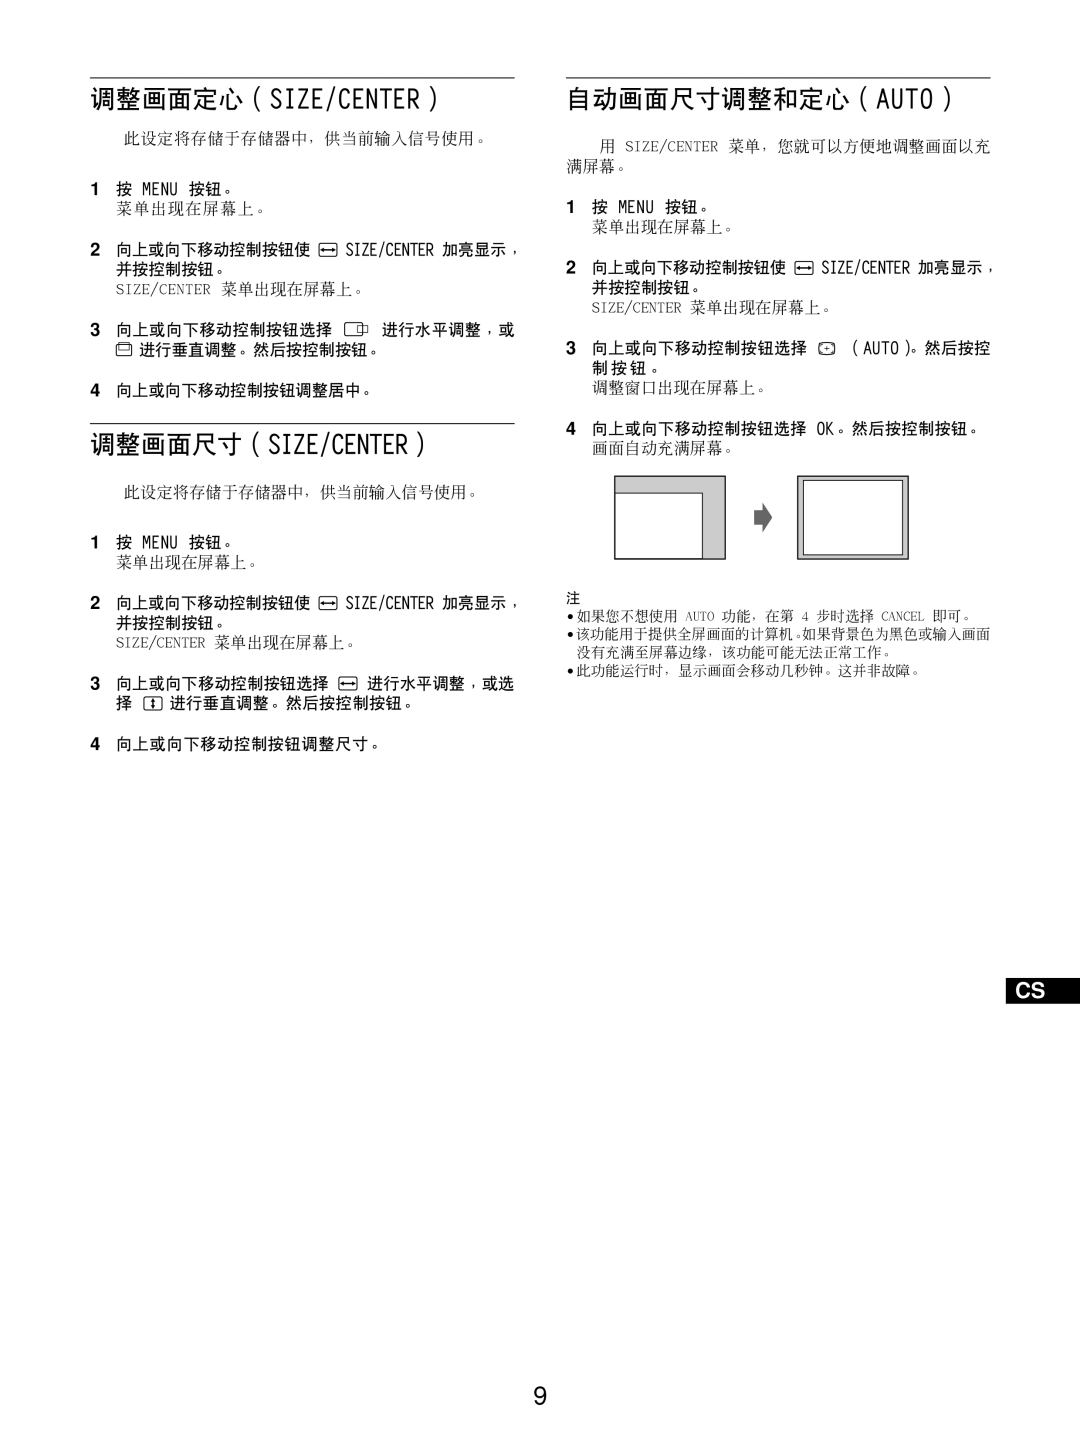 Sony GDM-5510 operating instructions 调整画面定心（Size/Center）, 调整画面尺寸（Size/Center）, 自动画面尺寸调整和定心（Auto） 